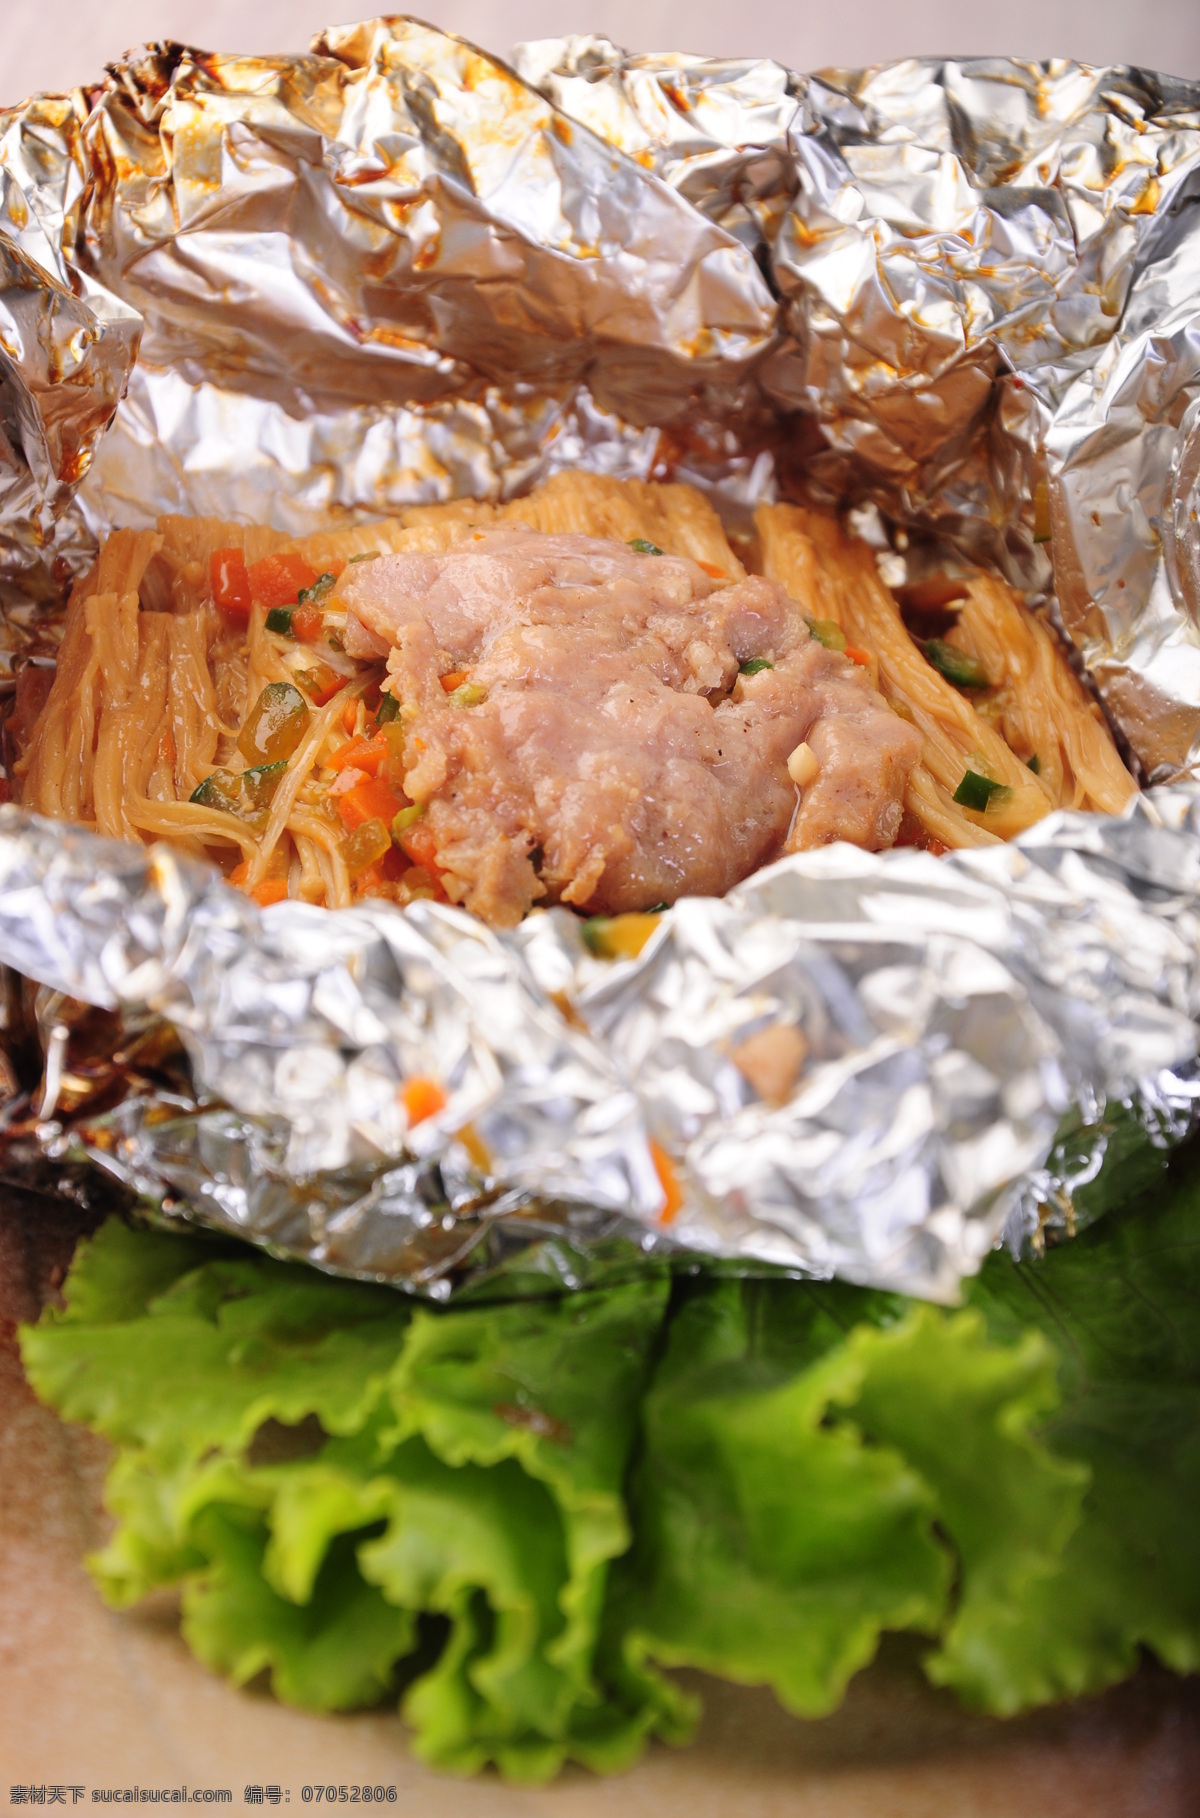 锡纸包金针菇 金针菇 美食 炒菜 中餐 传统美食 餐饮美食